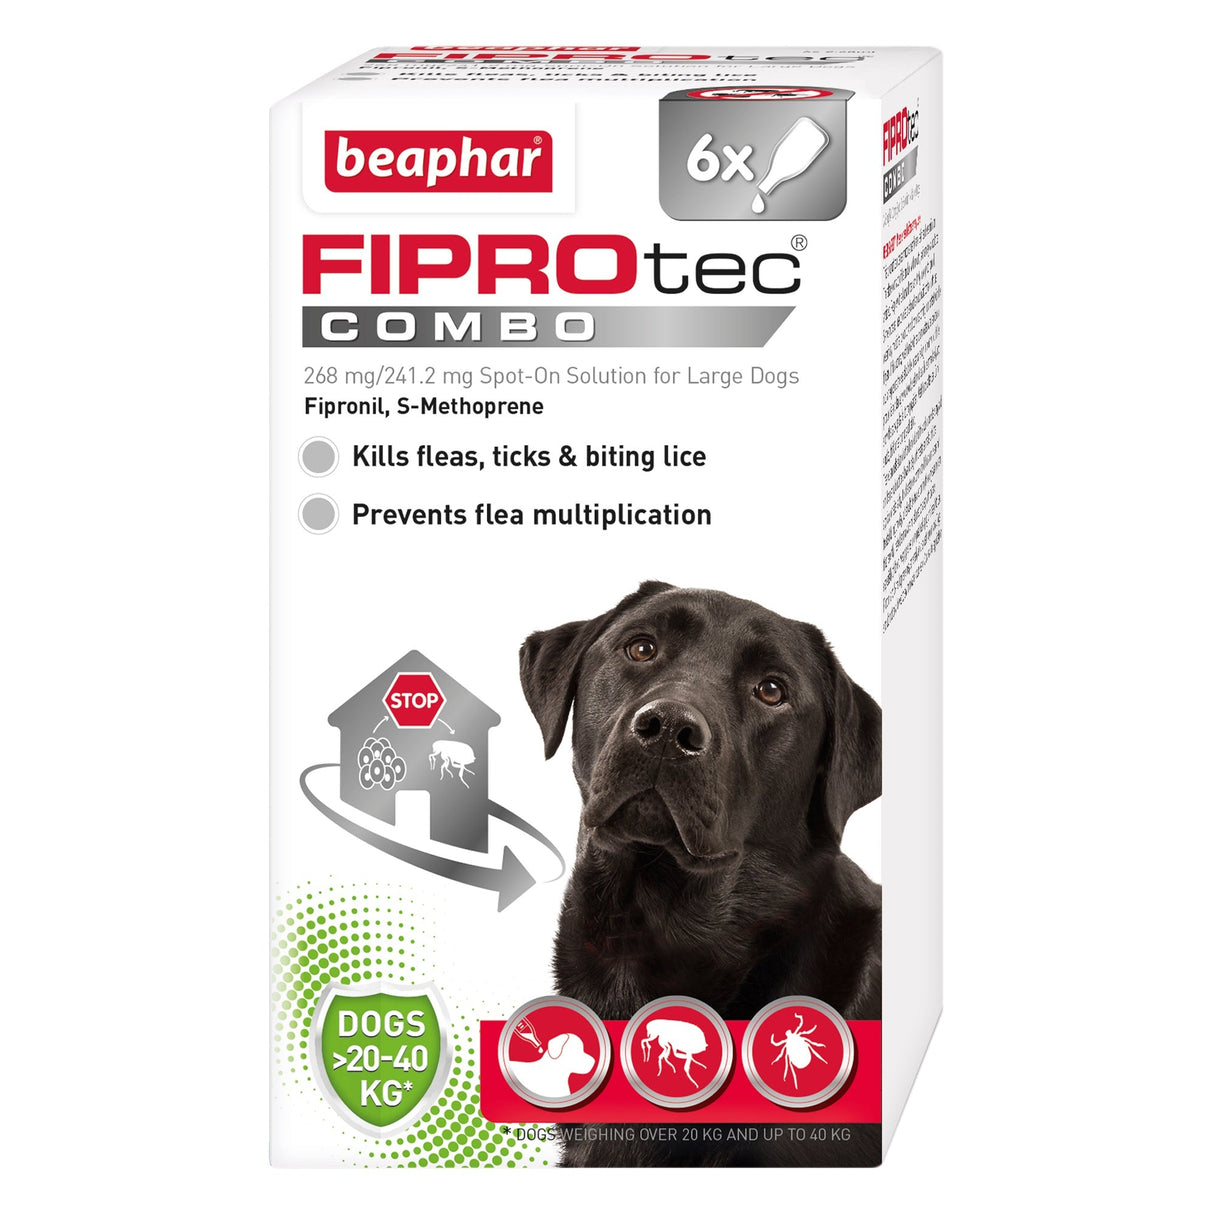 Beaphar FIPROtec COMBO Flea & Tick Spot On for Large Dogs, Beaphar, 6 pipette x 4